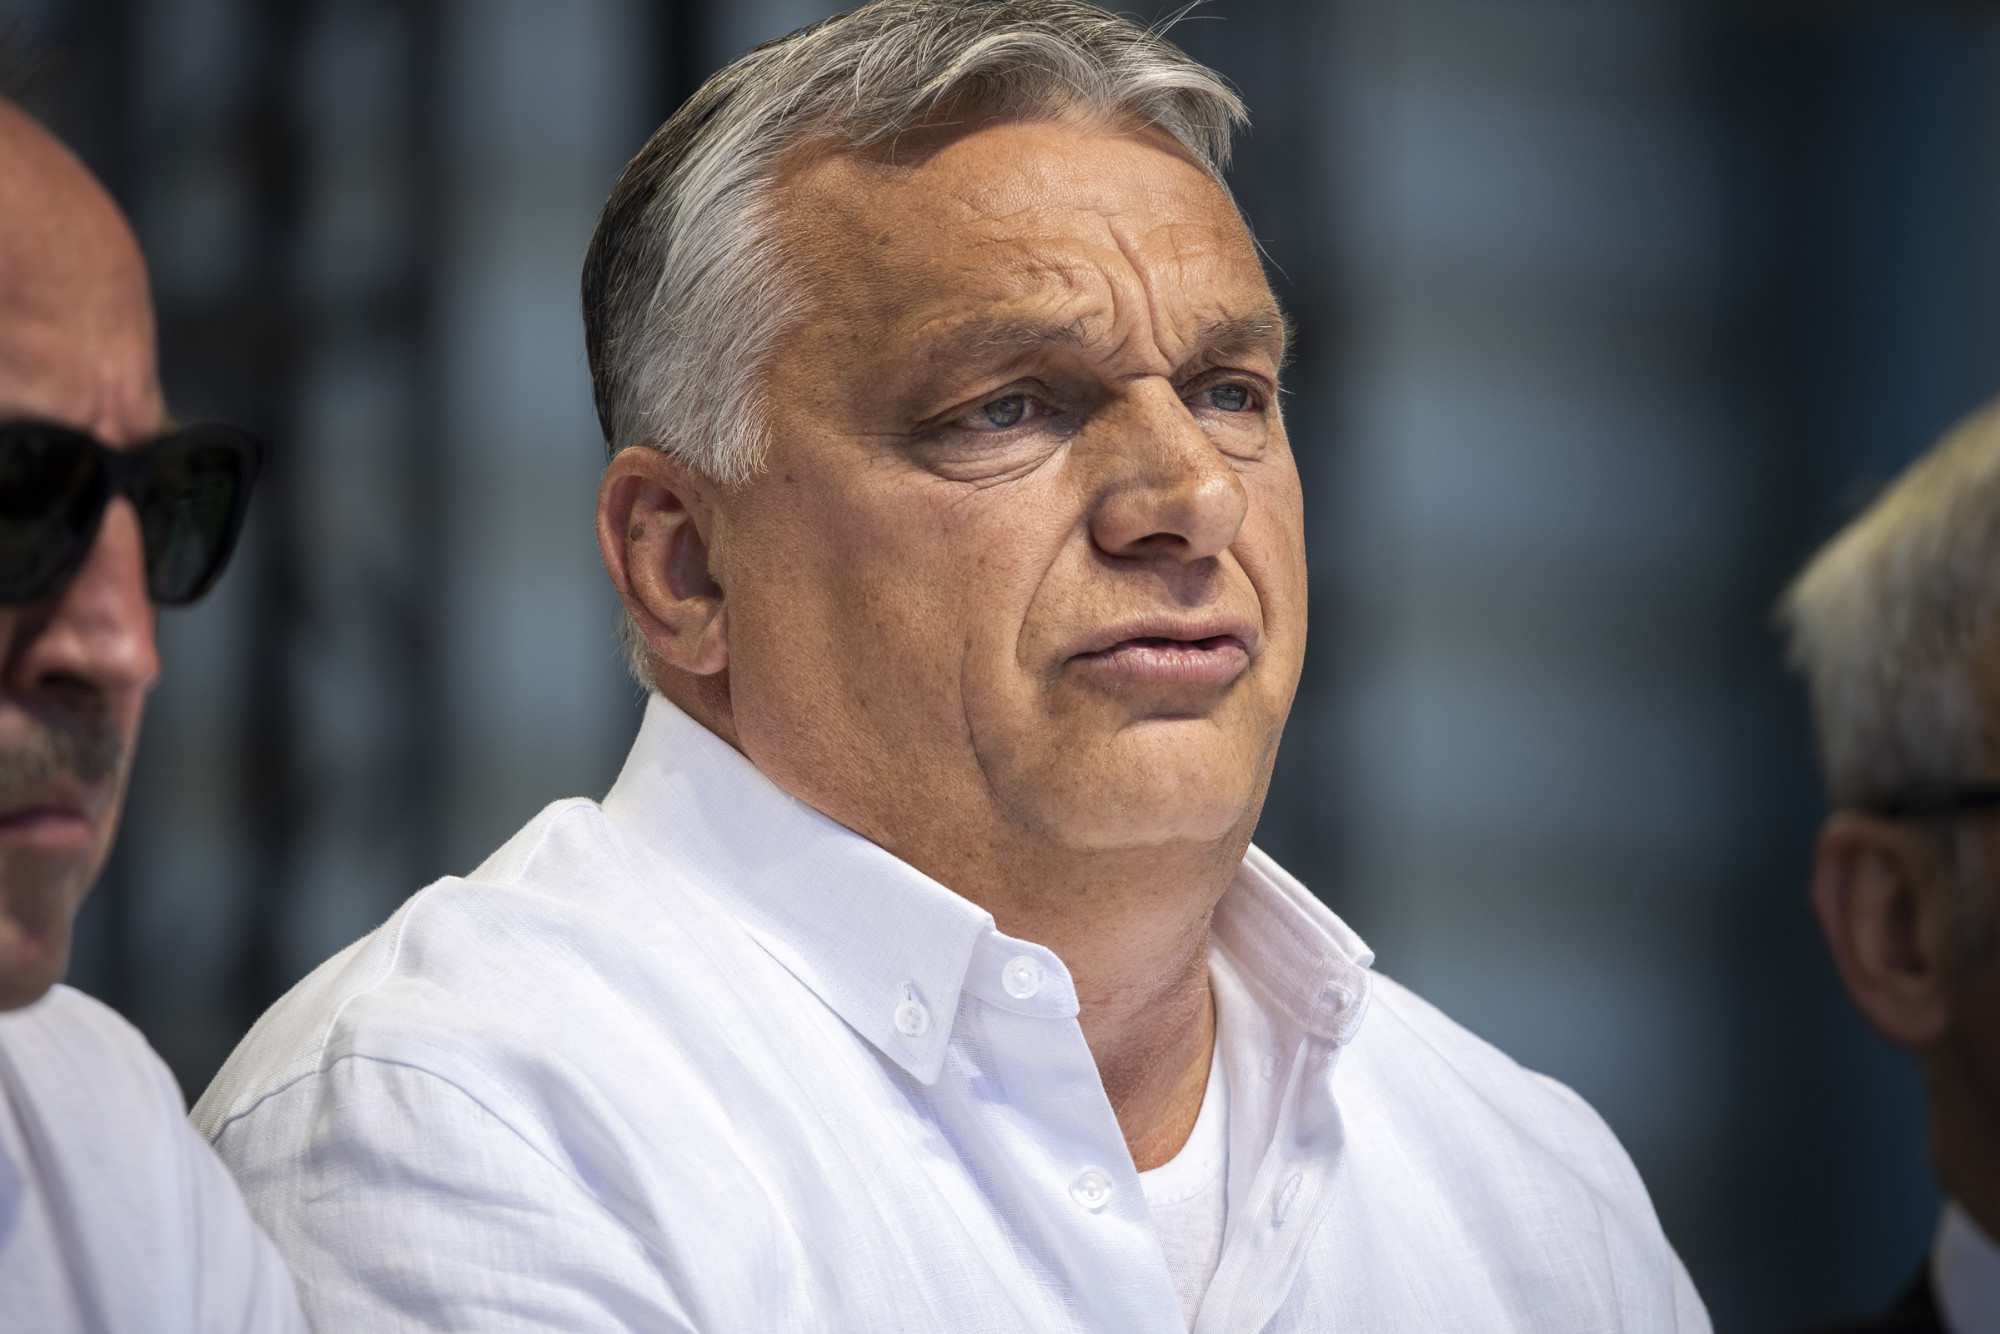 A DK elküldte az EP-képviselőknek Orbán fajelméleti fejtegetését